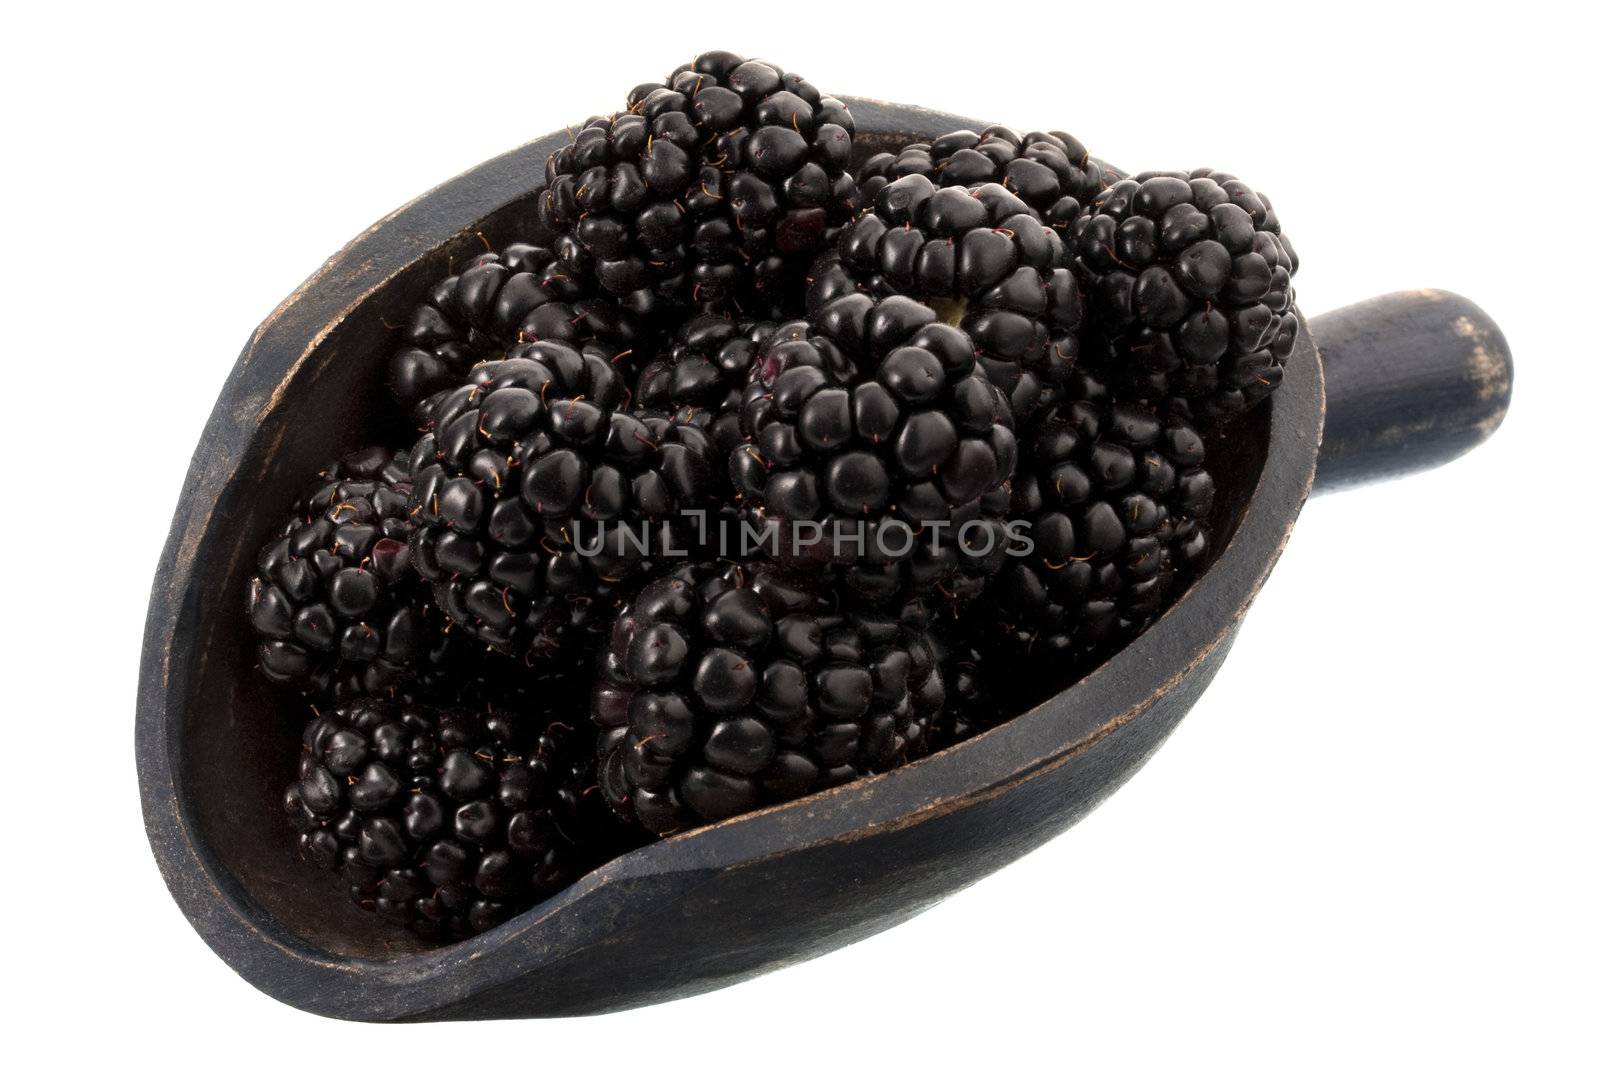 scoop of blackberries by PixelsAway